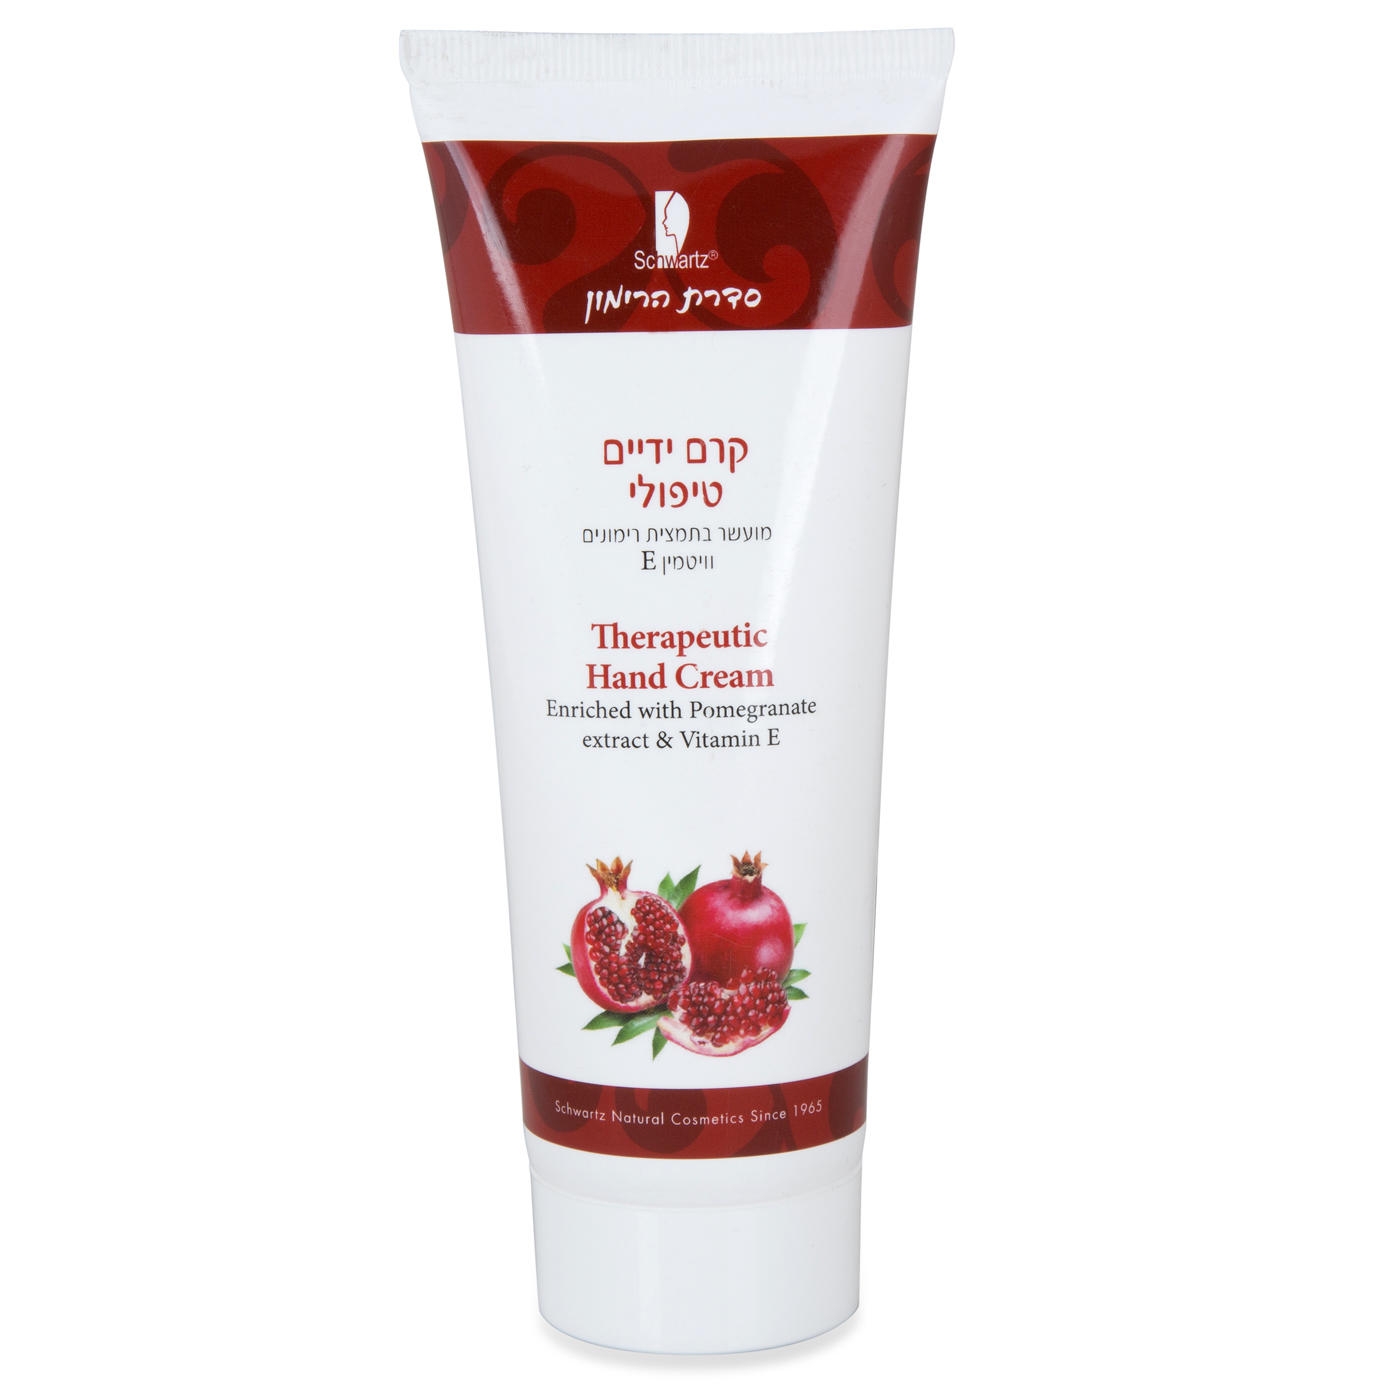 Schwartz Pomegranate-Enriched Therapeutic Hand Cream  - 1